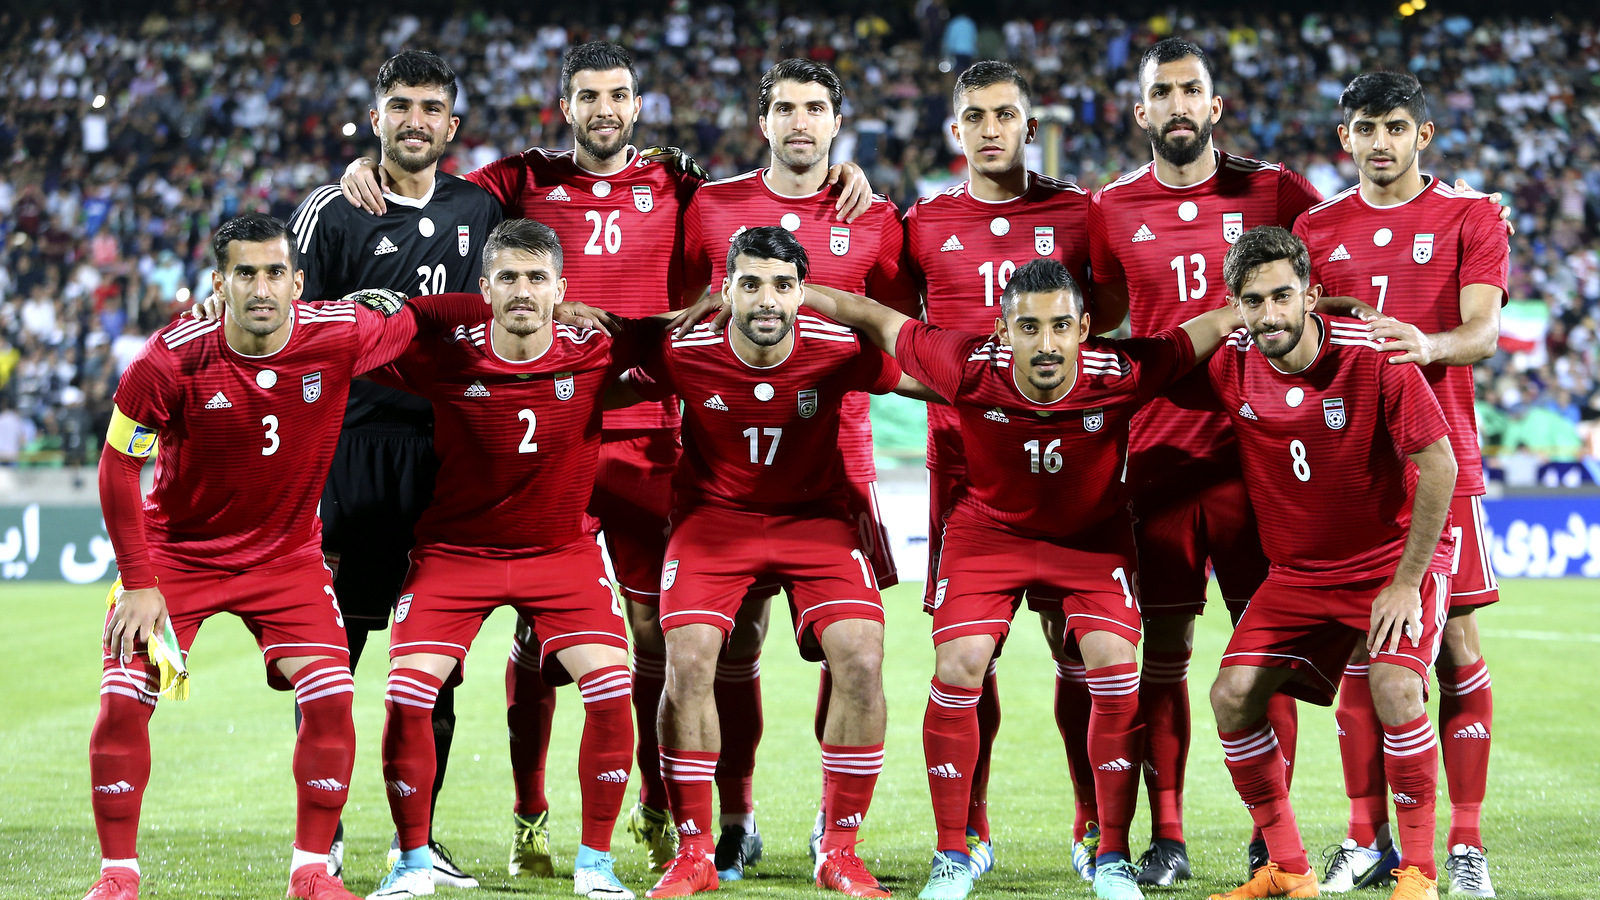 伊朗球迷,伊朗世界杯,足球队,普利西奇,世界杯比赛